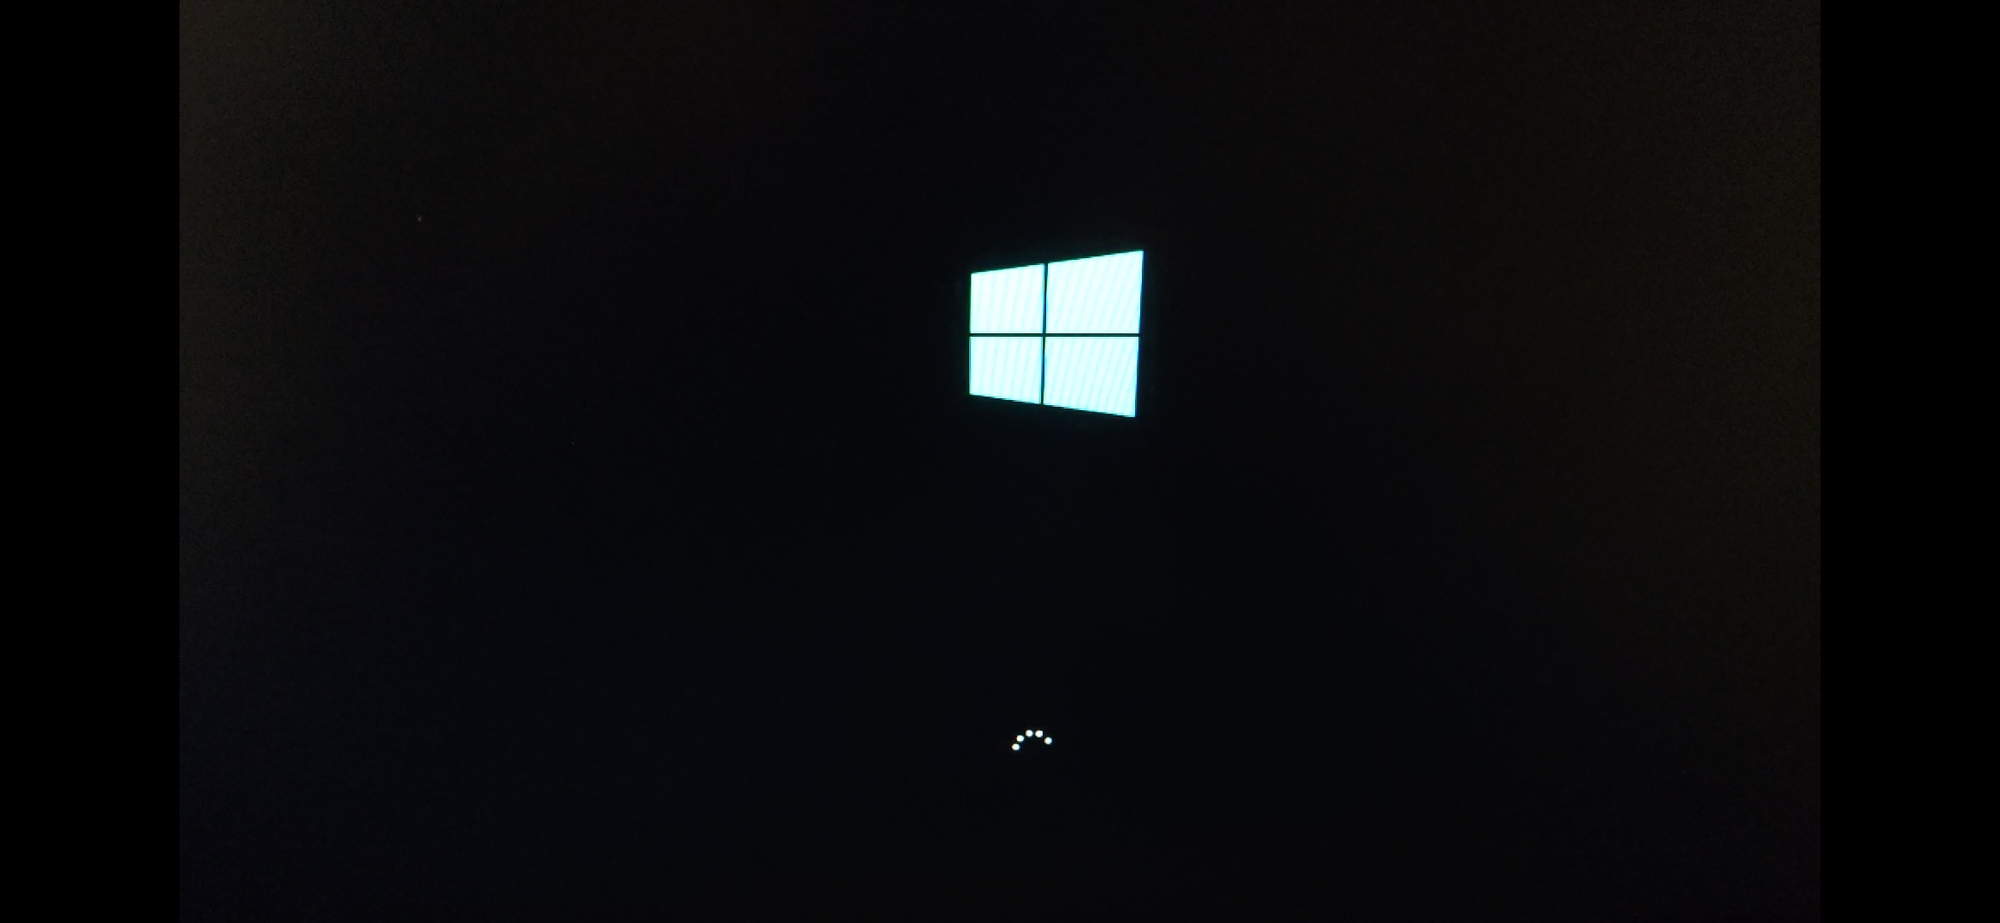 I can't open my Windows 10 pc!!! 02e47c4b-3fbd-435f-900c-22a0c3a588a9?upload=true.jpg